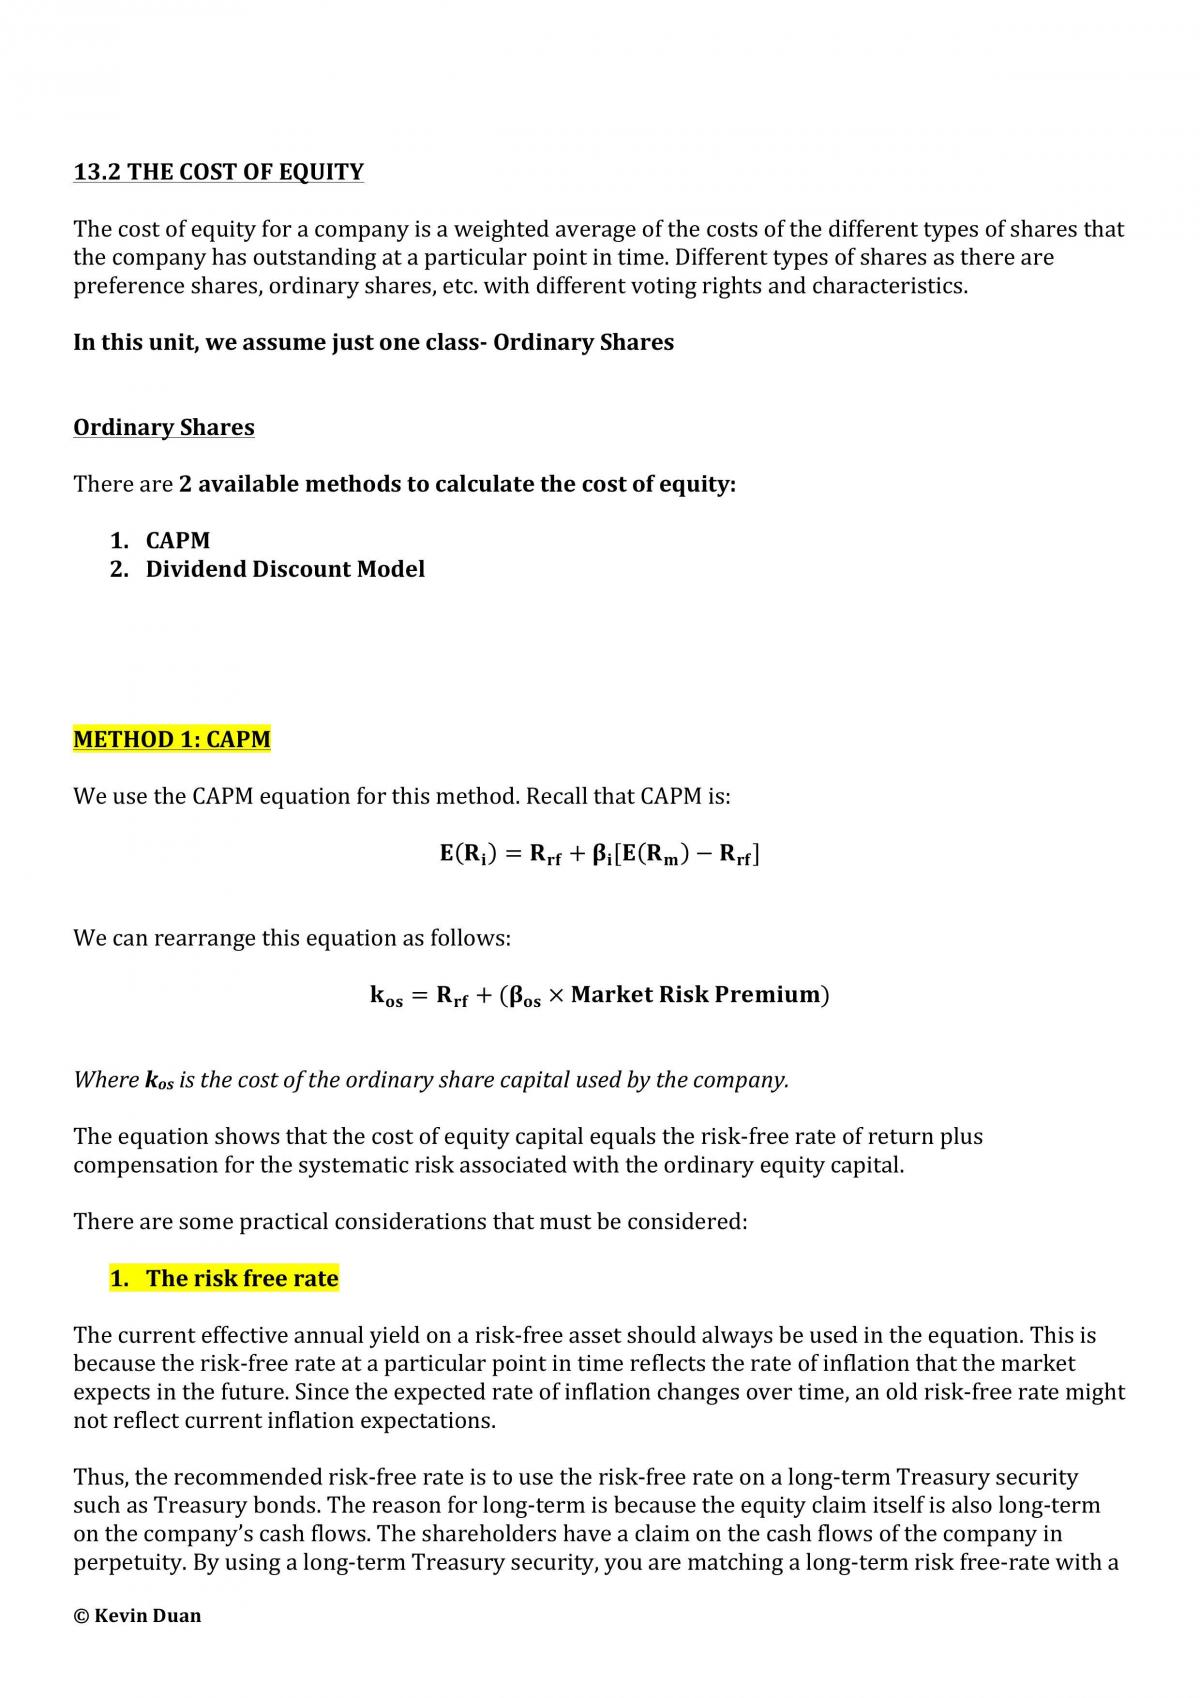 BFC2140 Sem 2, 2014 Study Notes - Page 86